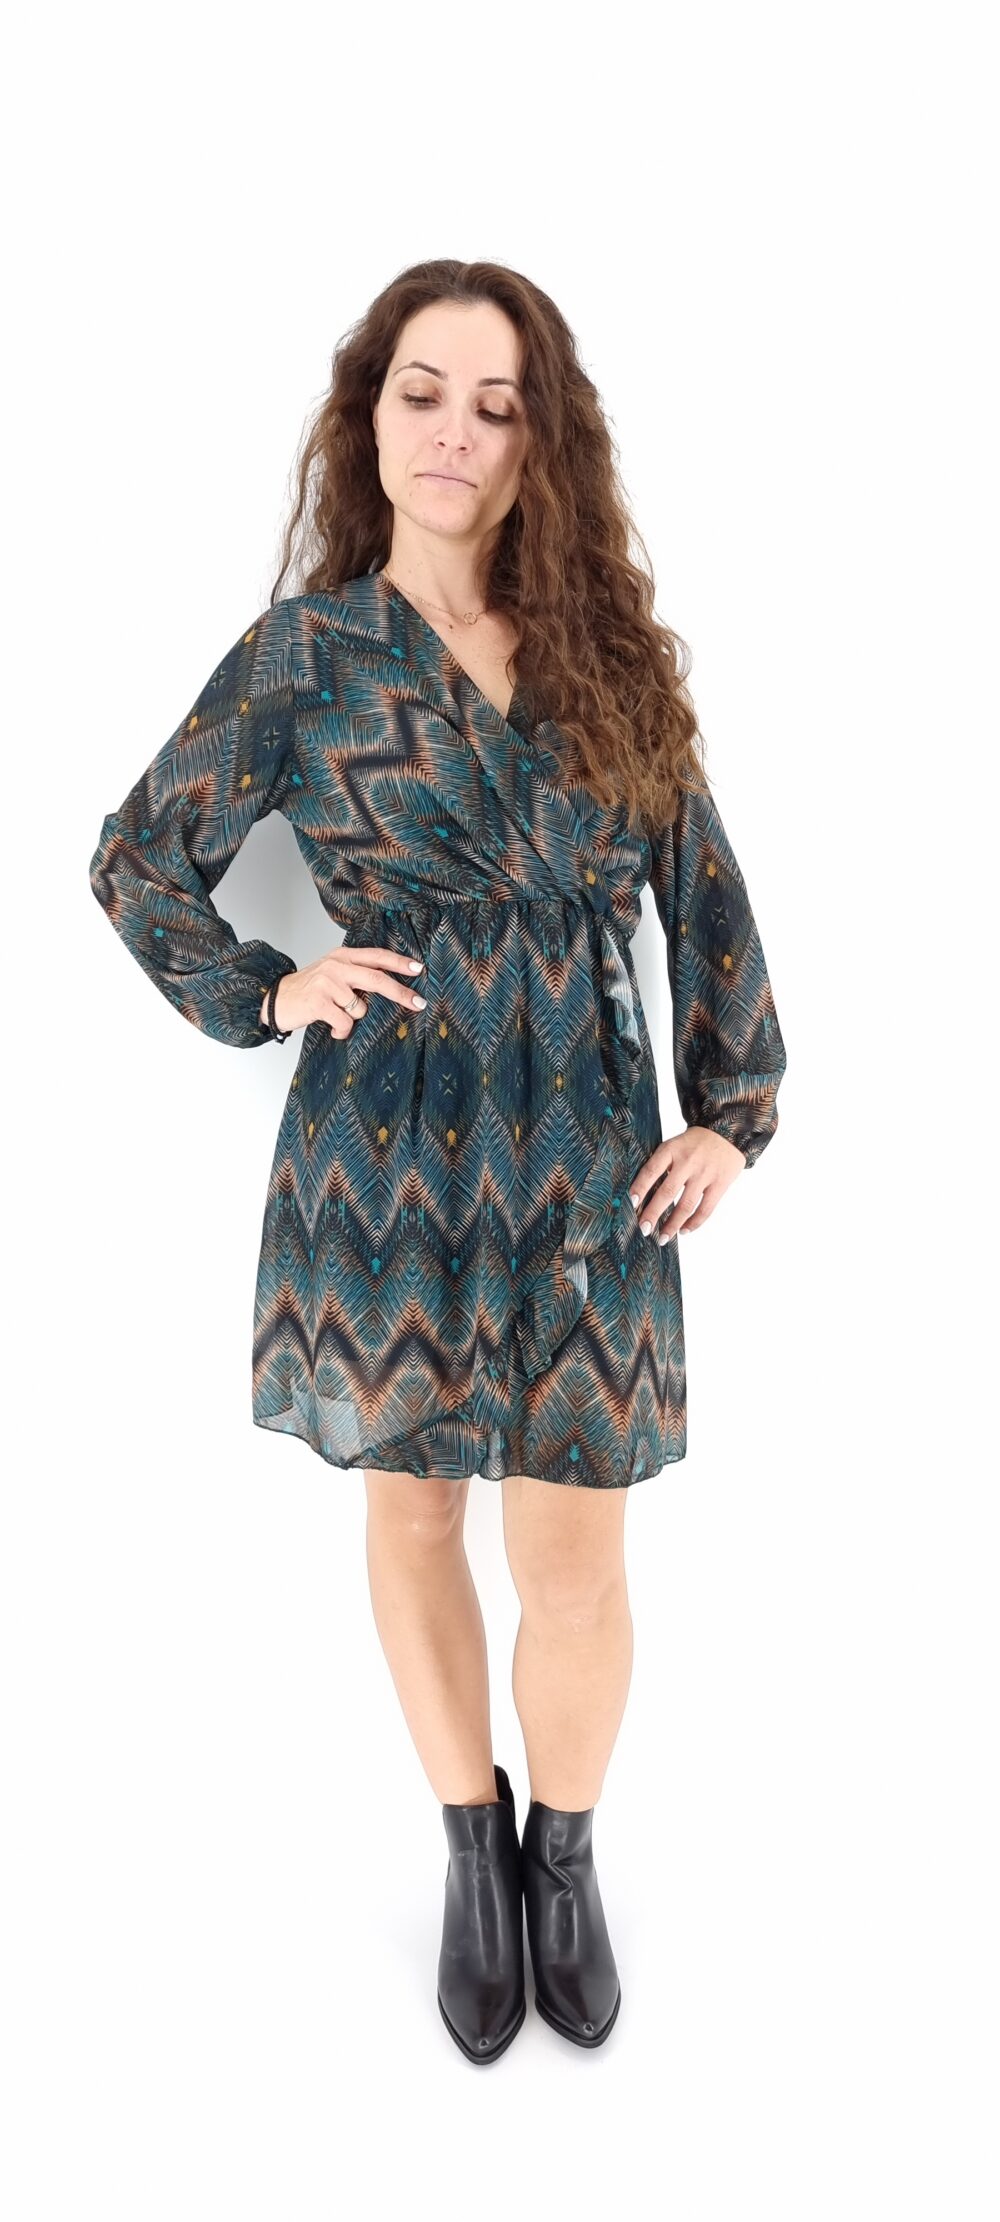 Φόρεμα κοντό κρουαζέ με πολύχρωμο μοτίβο σε μπλε αποχρώσεις